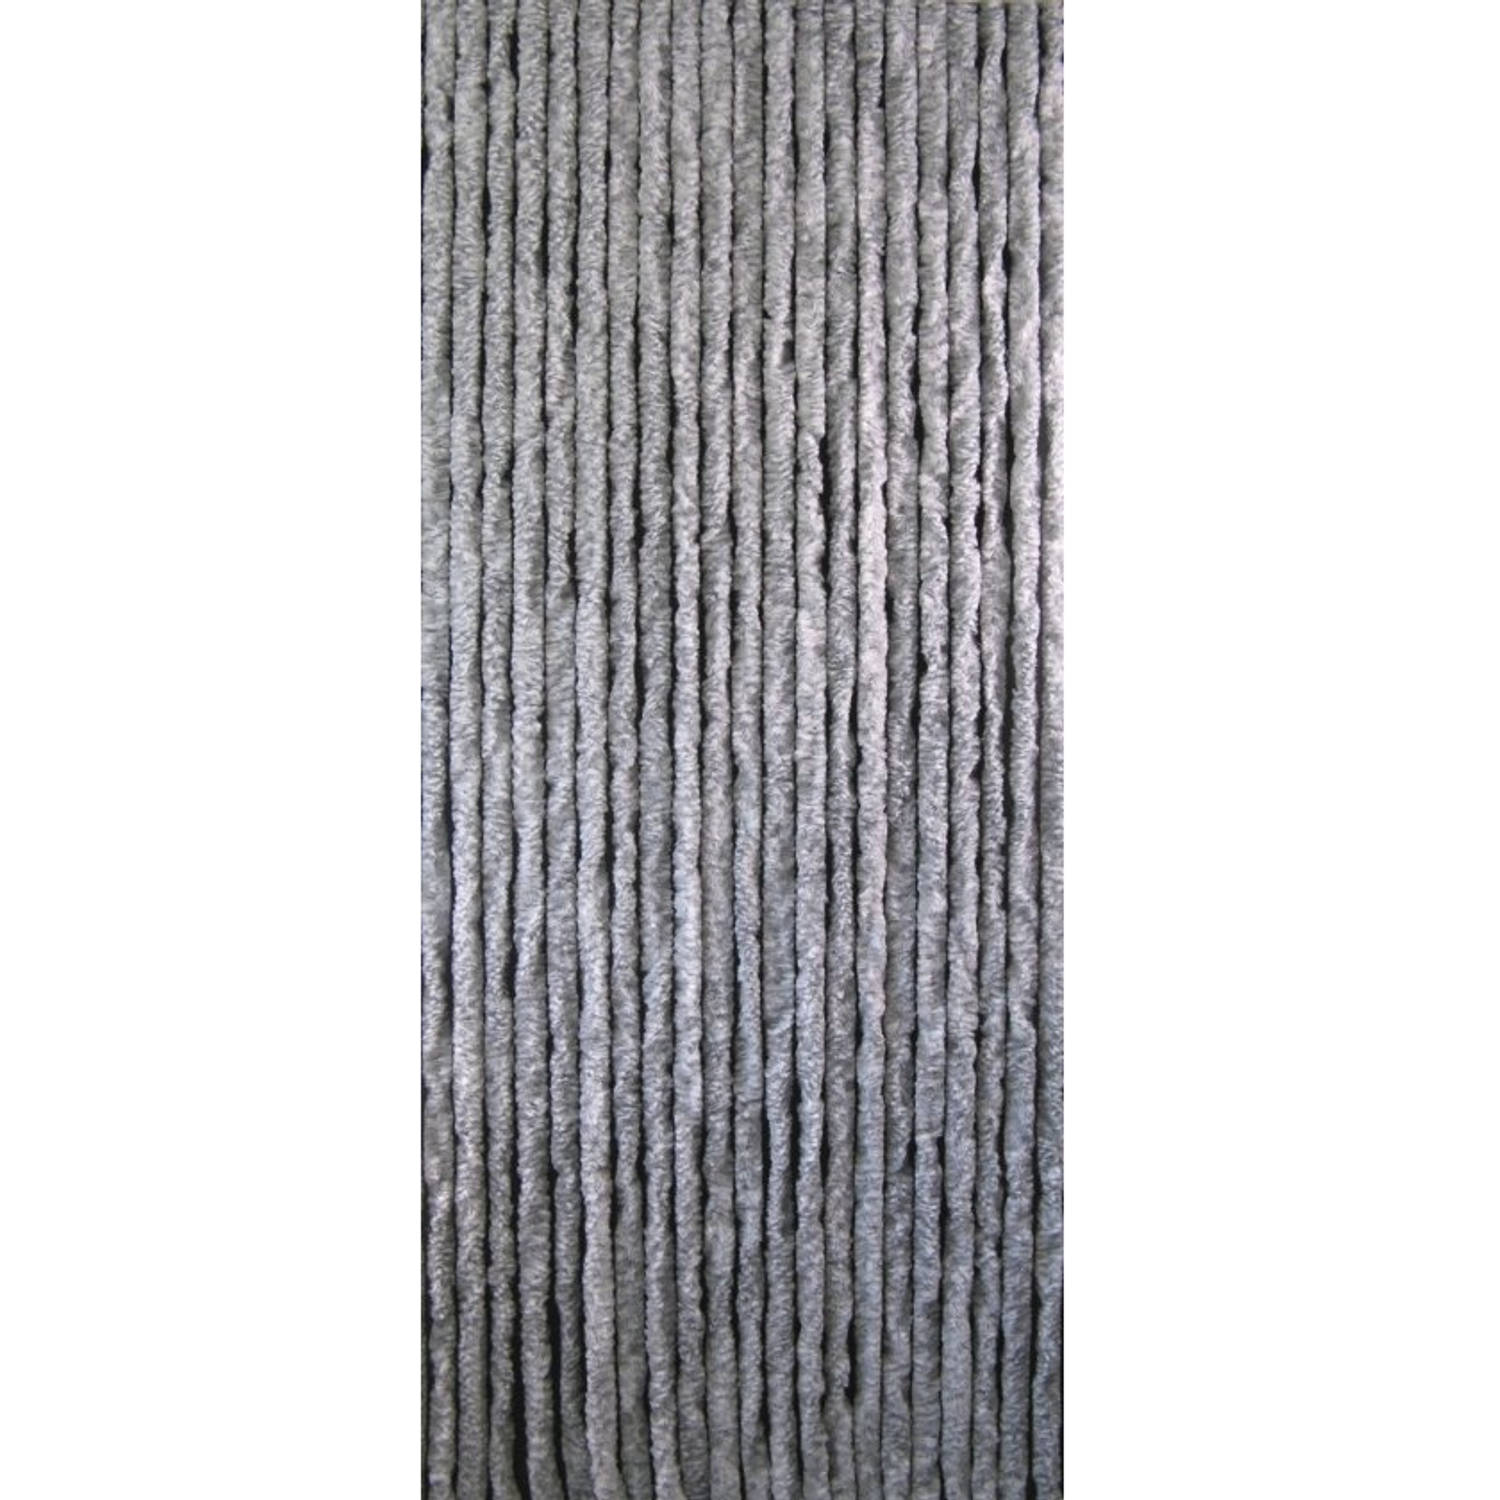 Vliegengordijn Kattenstaart - Grijs/Wit Gemêleerd 90 x 220 cm